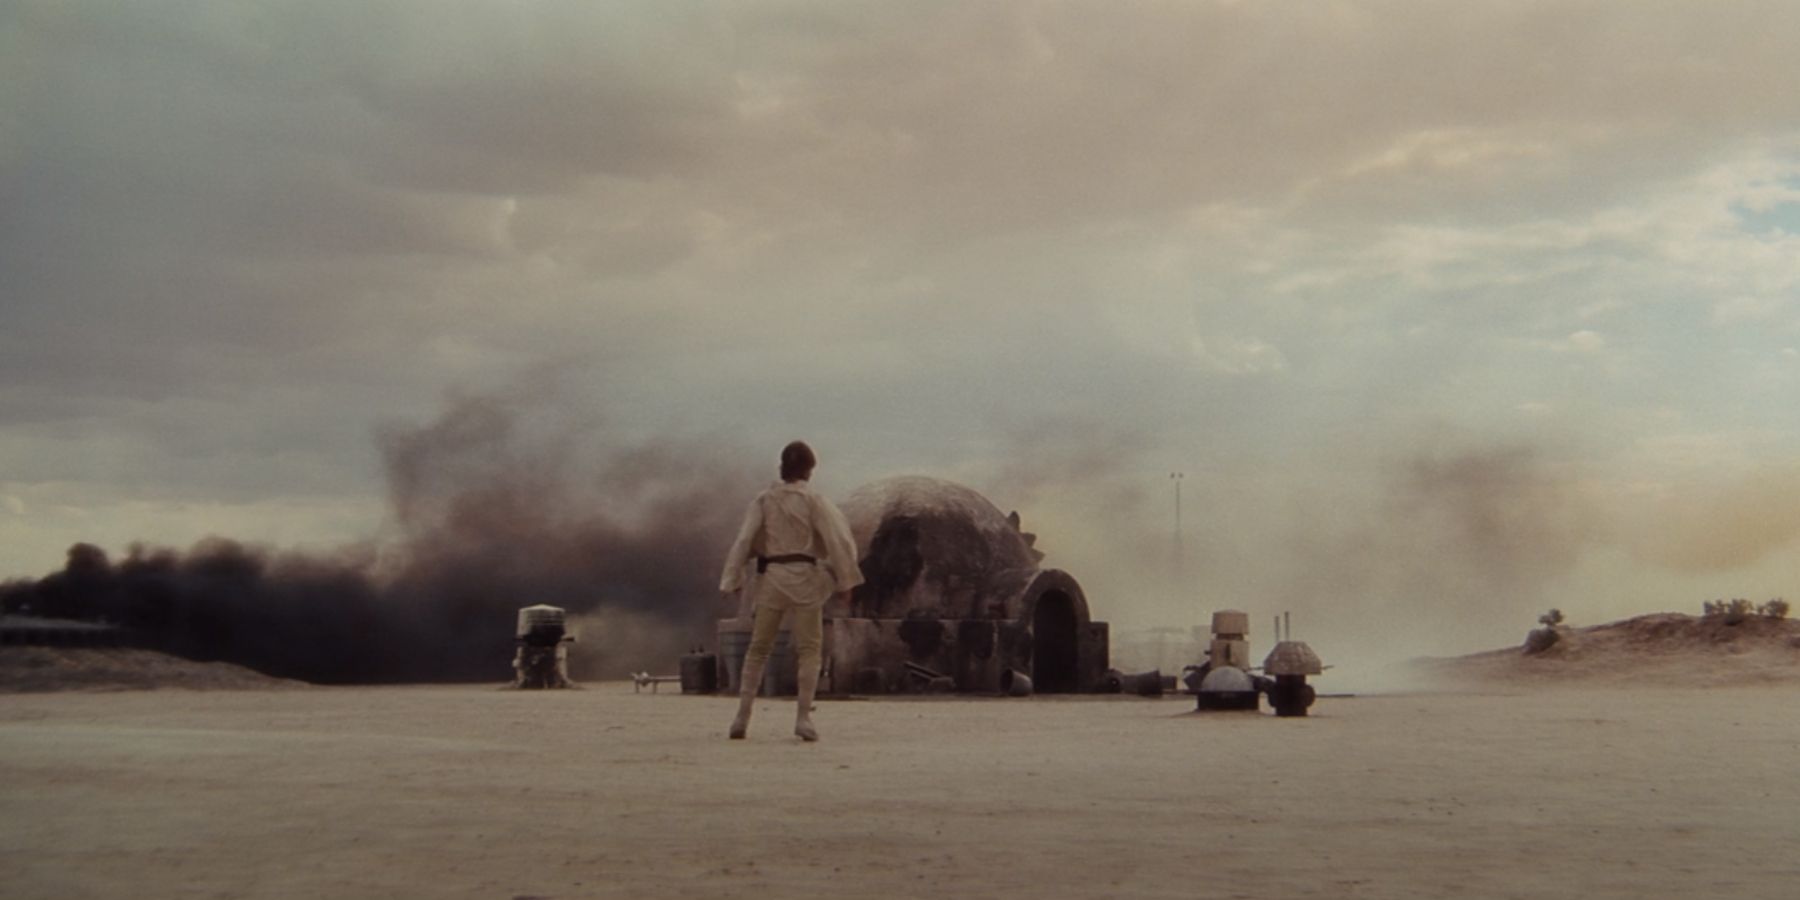 Luke Skywalker finding the ranch on fire in Star Wars A New Hope